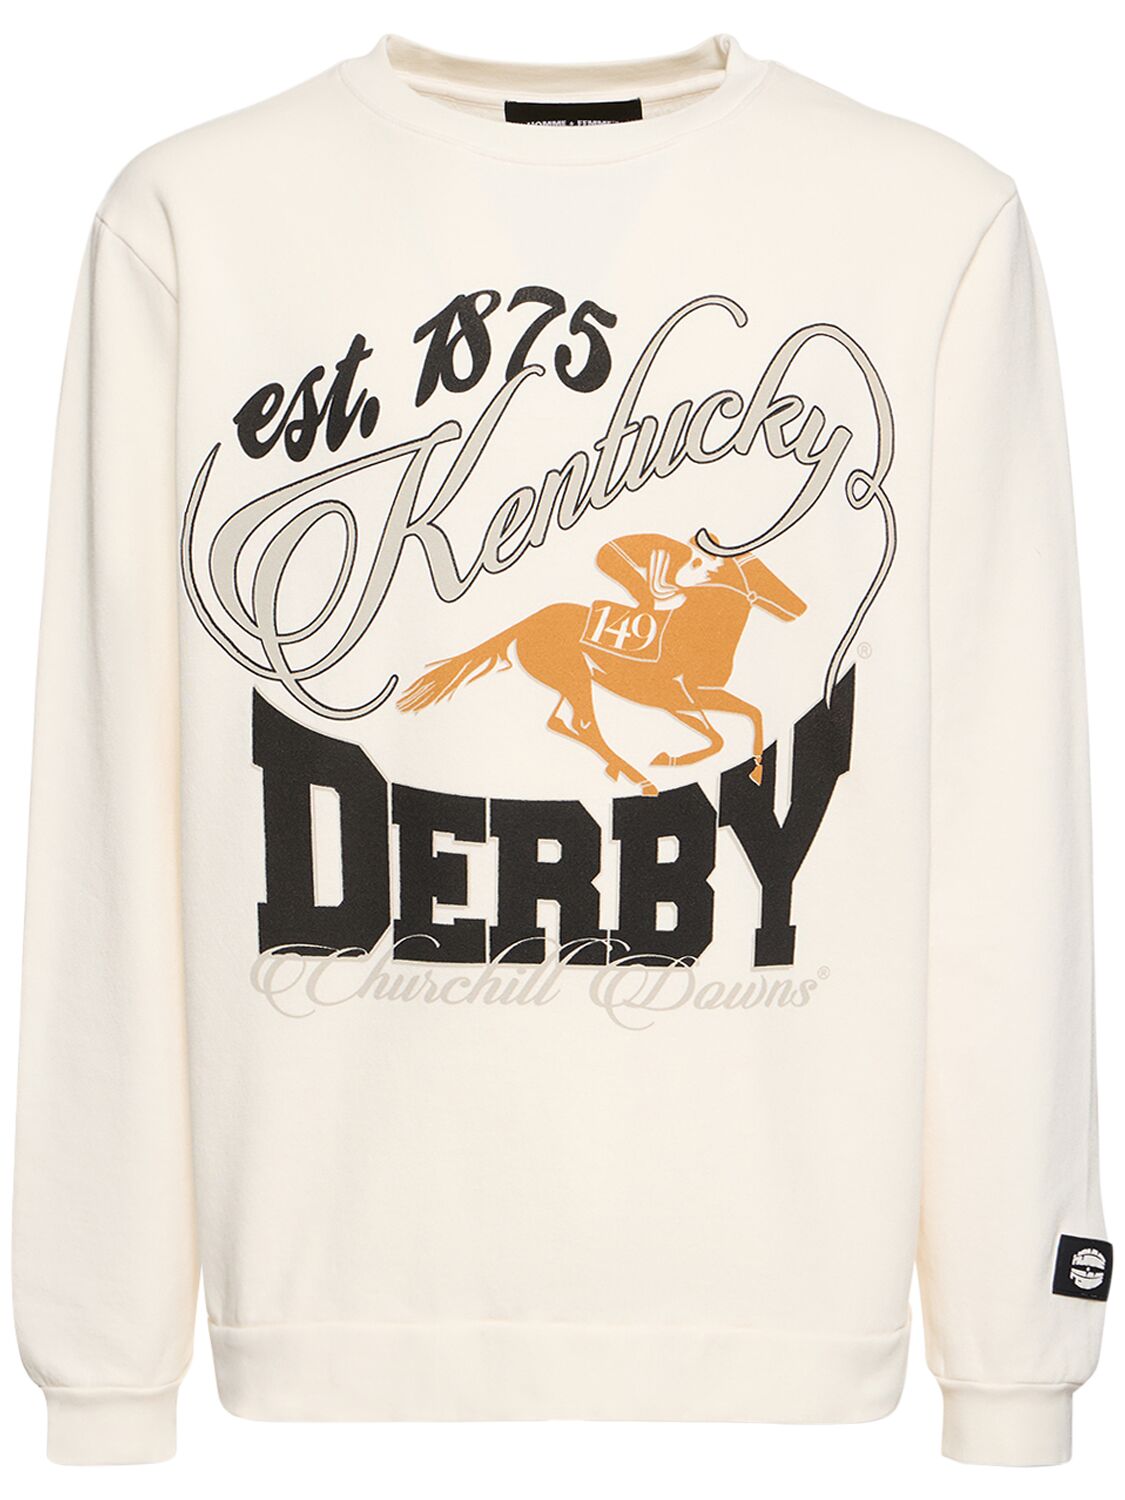 K. Derby 1875 Printed Sweatshirt